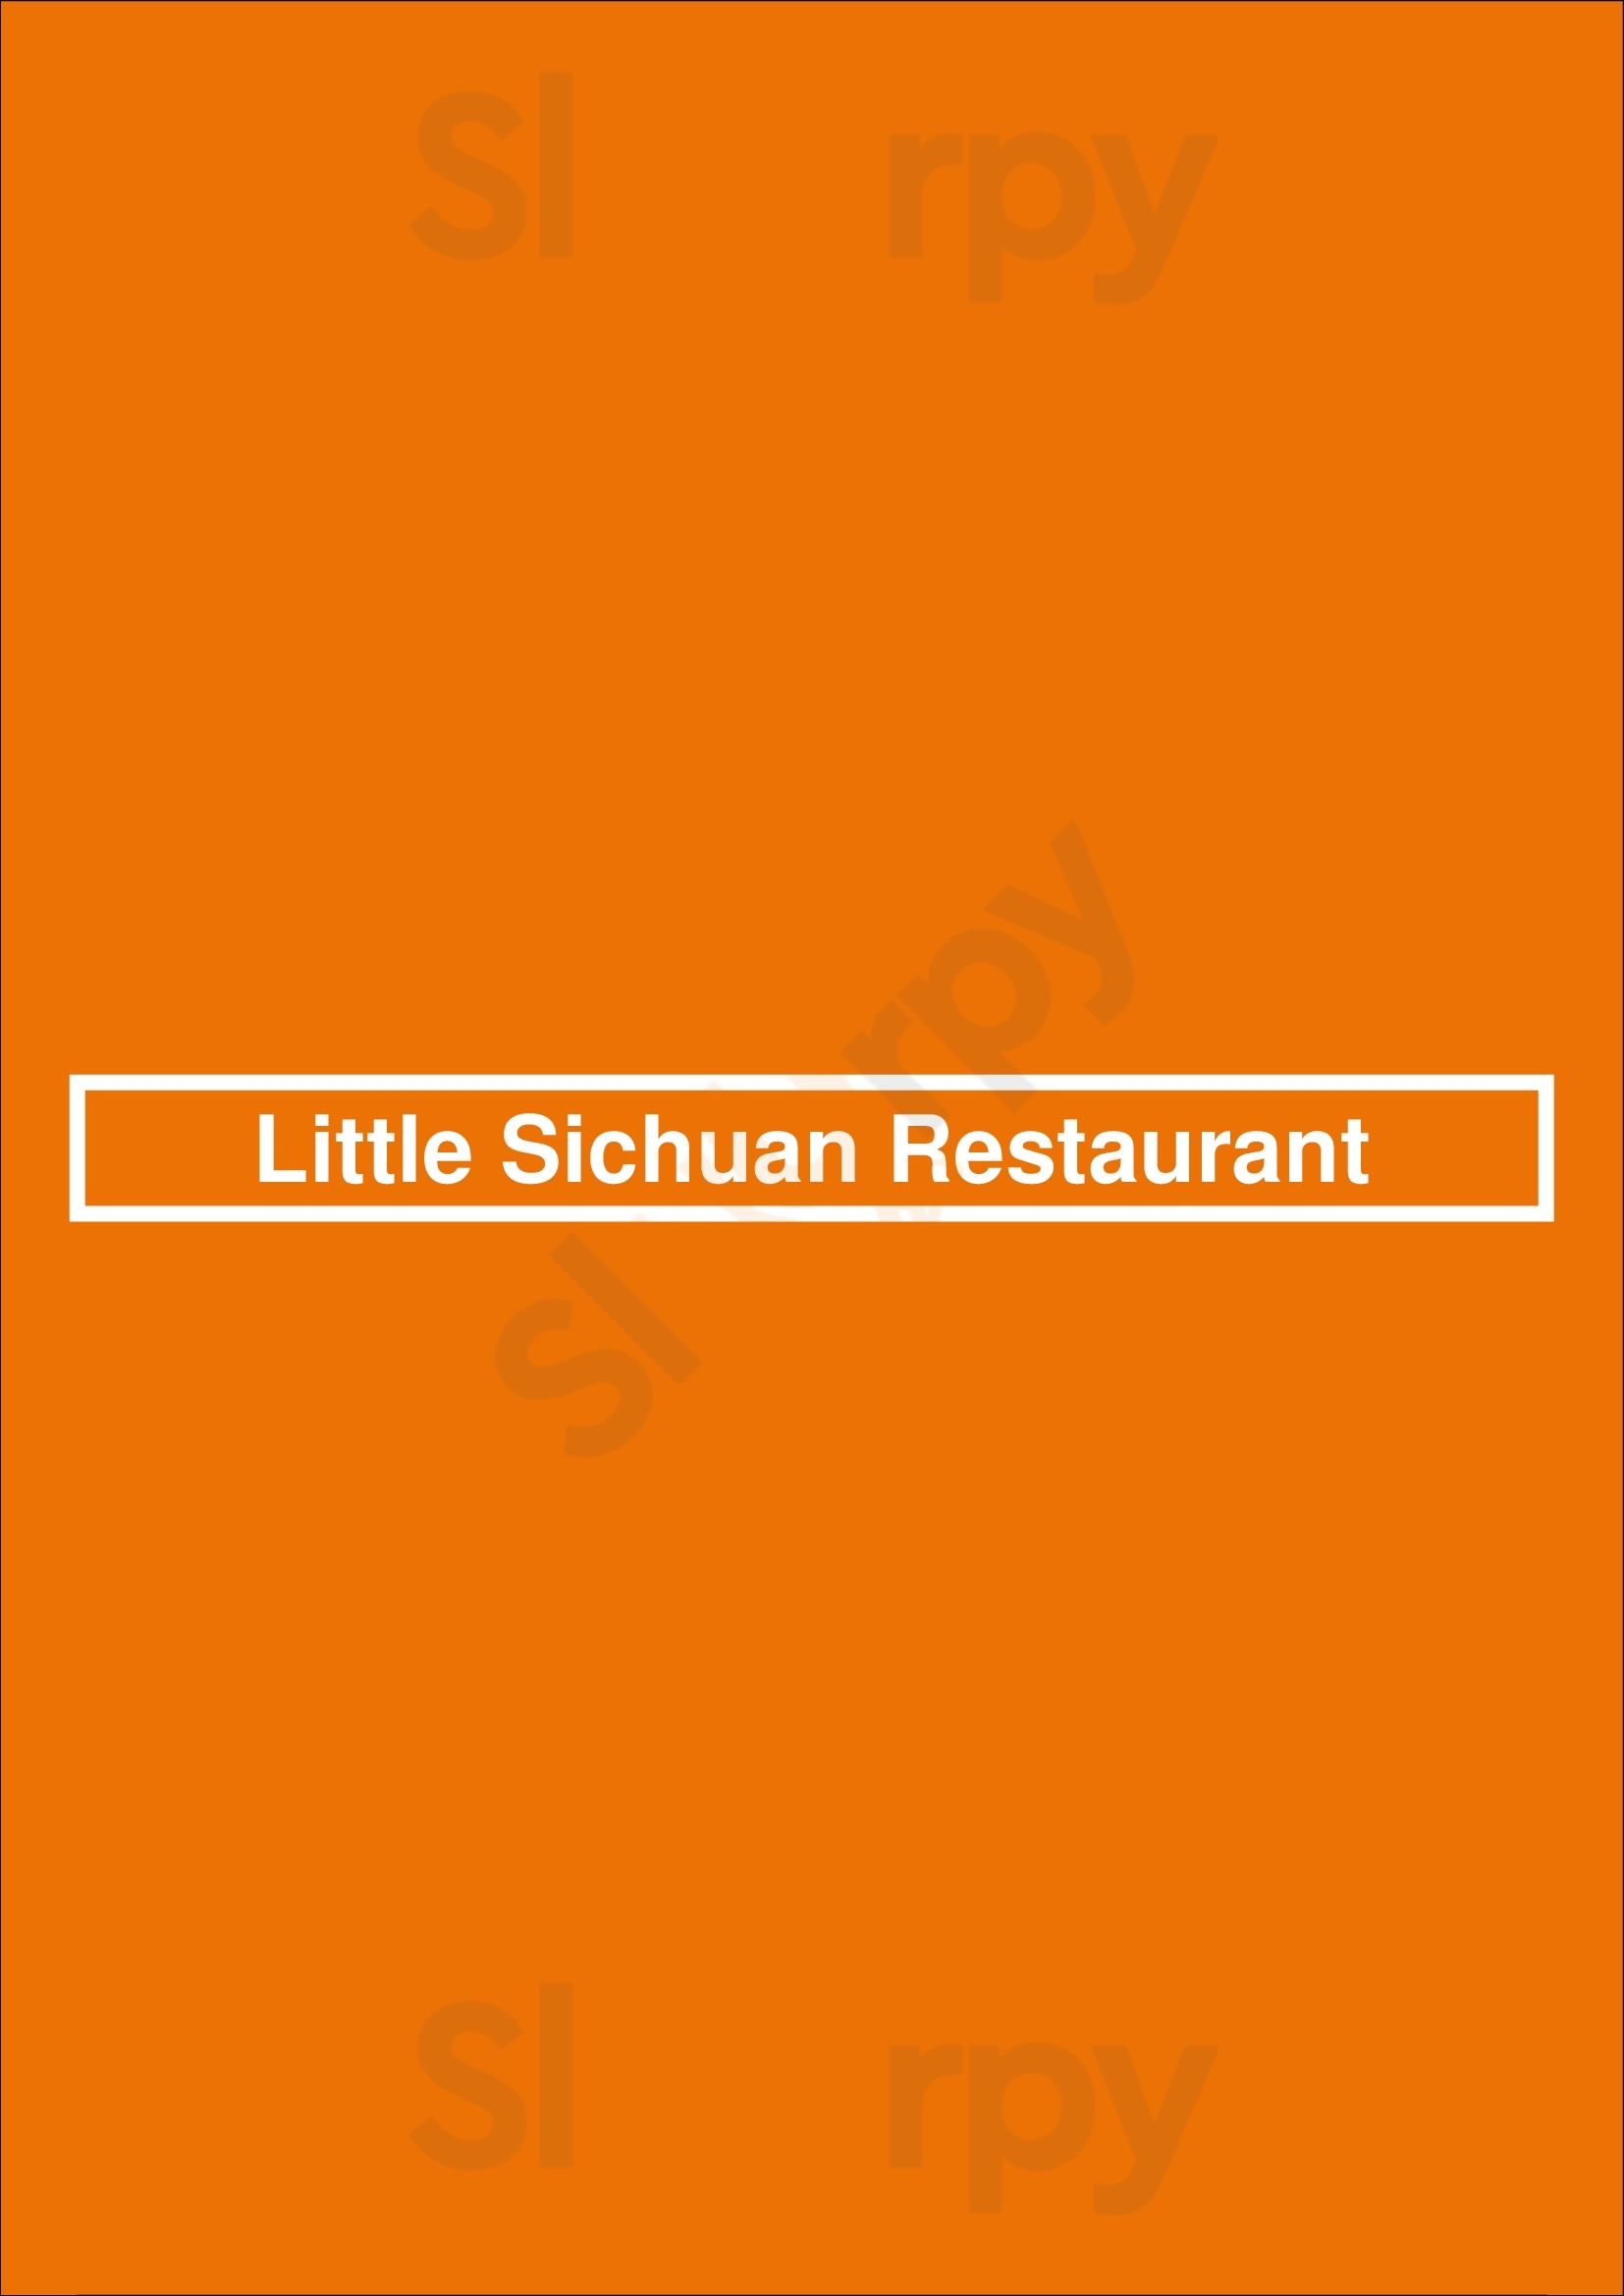 Little Sichuan Restaurant Newark Menu - 1